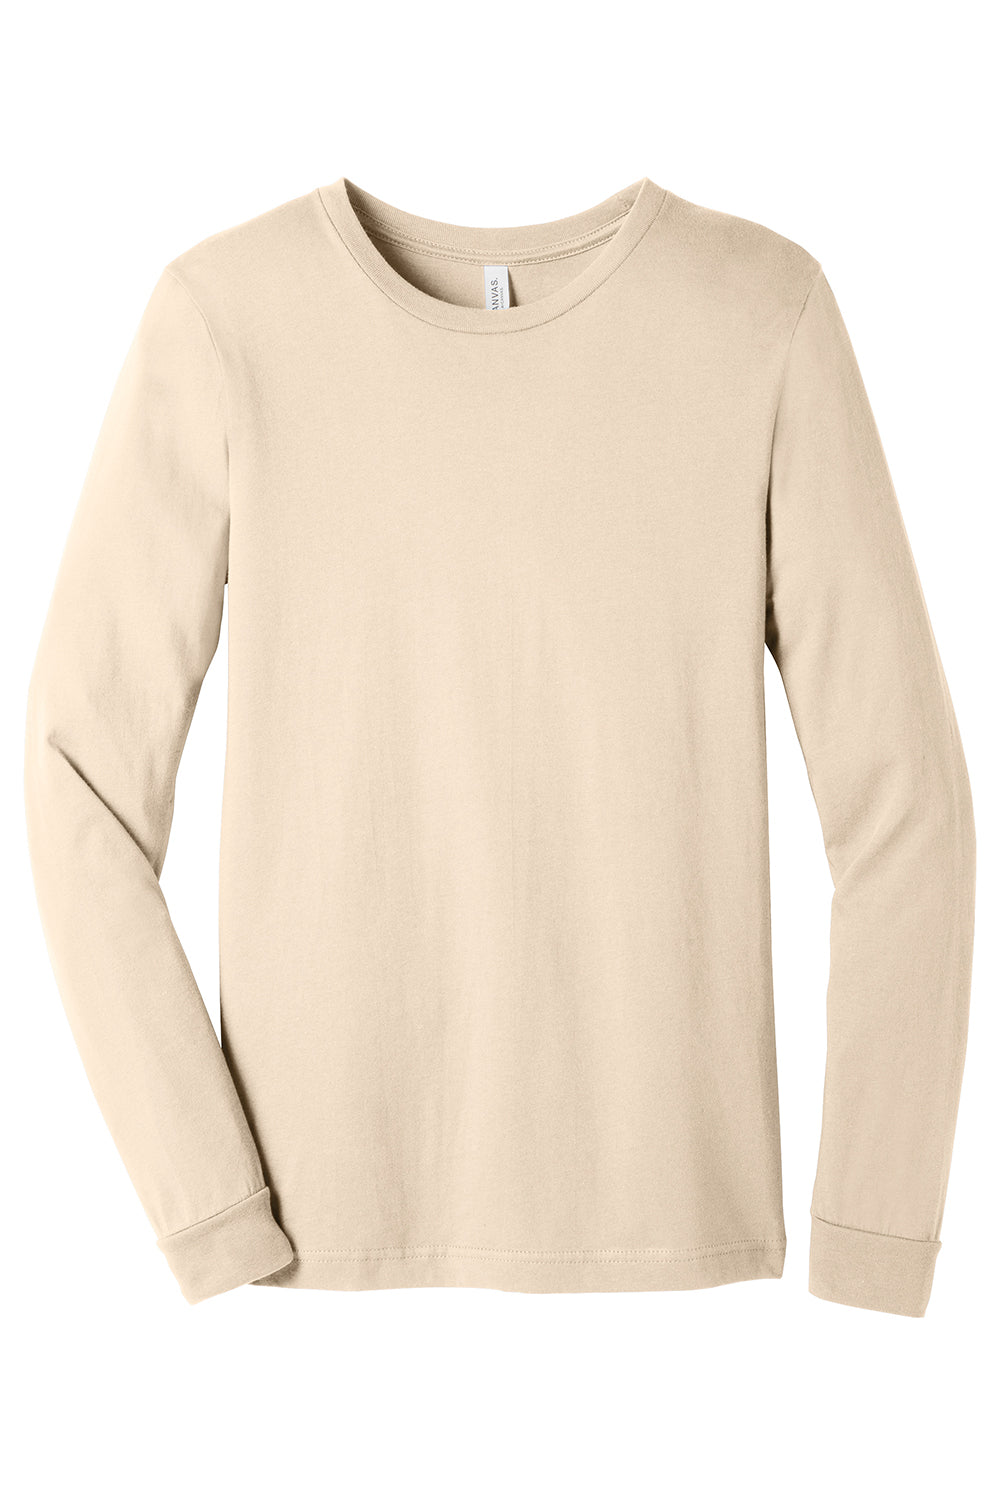 Bella + Canvas BC3501/3501 Mens Jersey Long Sleeve Crewneck T-Shirt Natural Flat Front